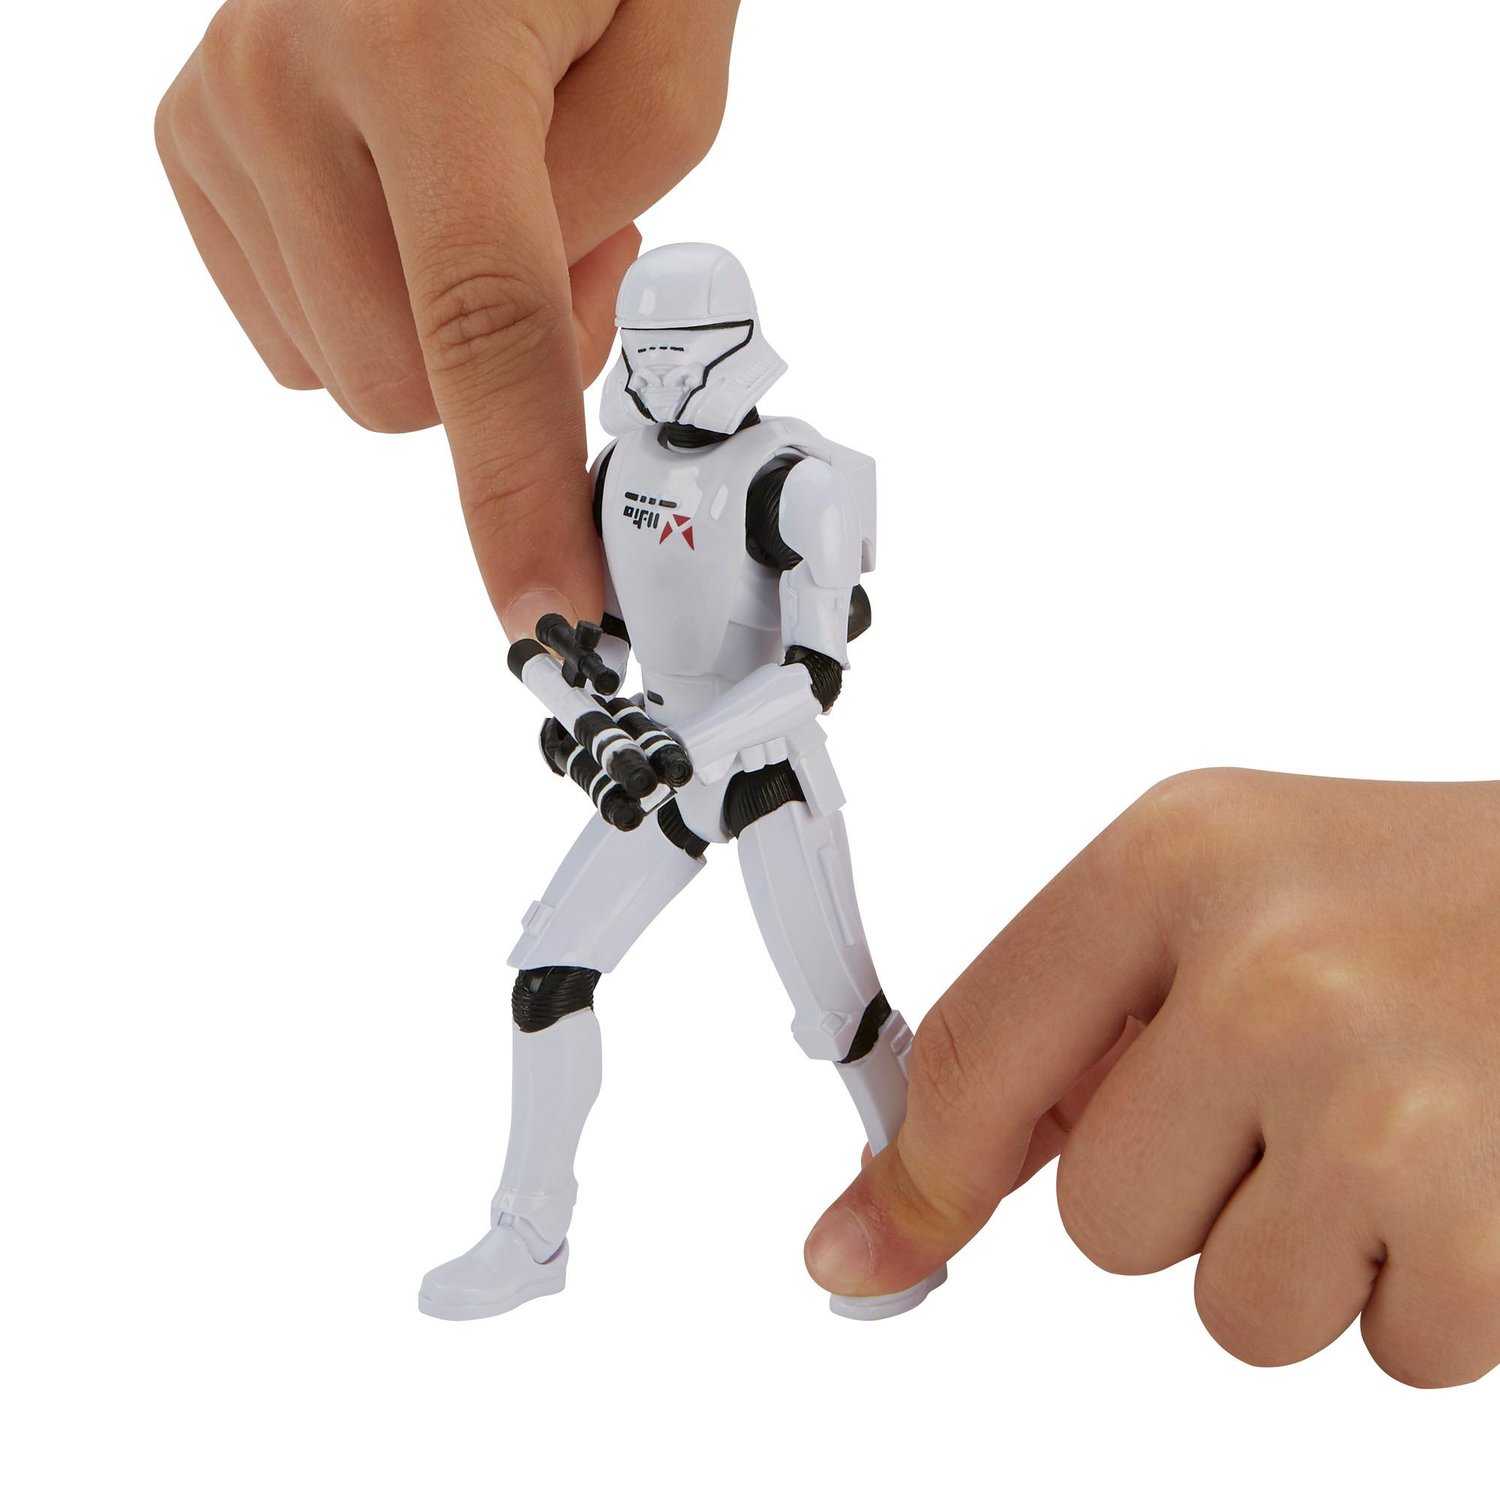 Figura de Ação Colecionável Jet Trooper Star Wars Galaxy of Adventures Hasbro